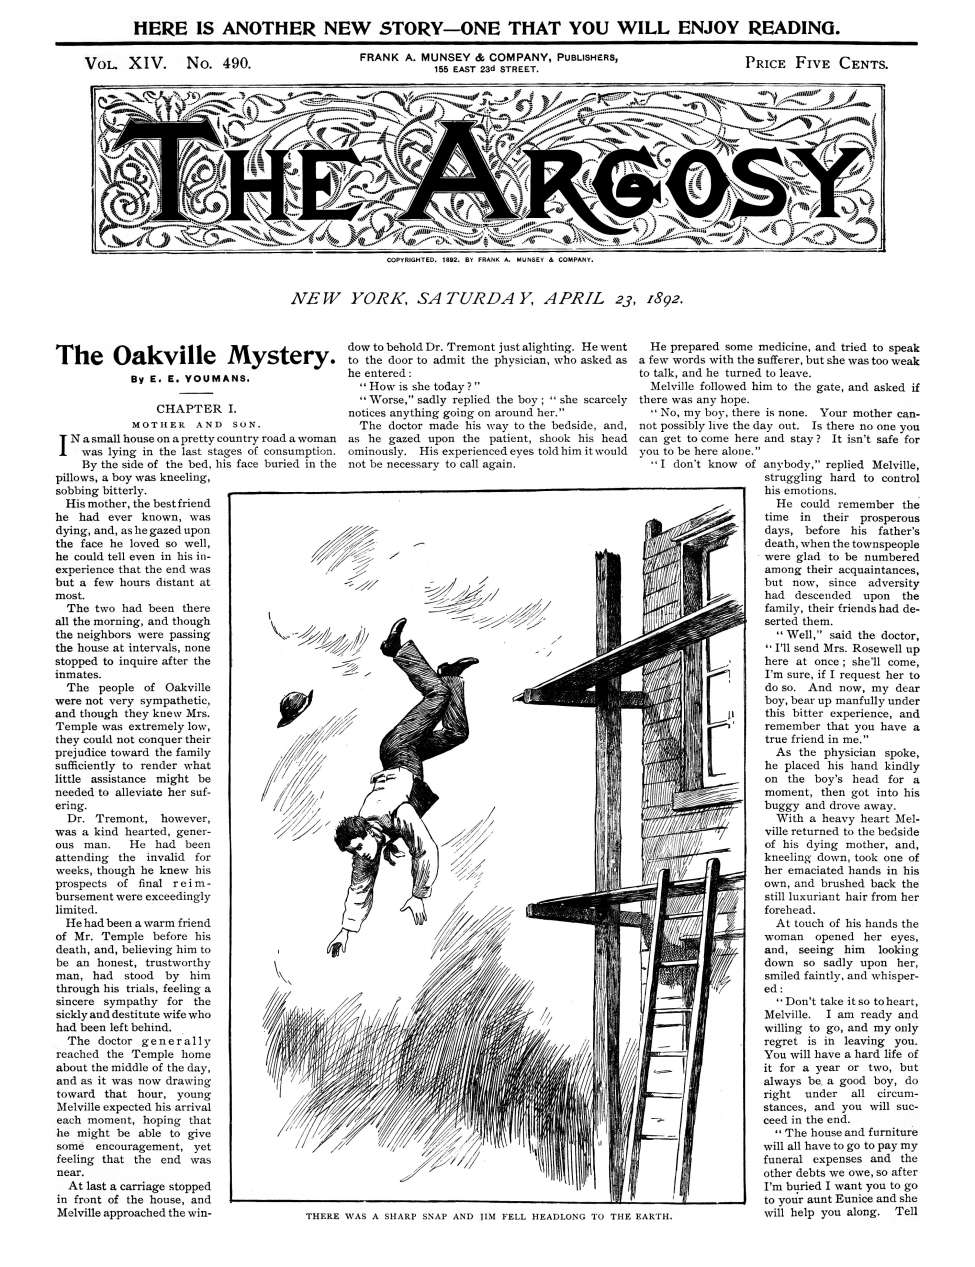 Book Cover For The Argosy v14 490